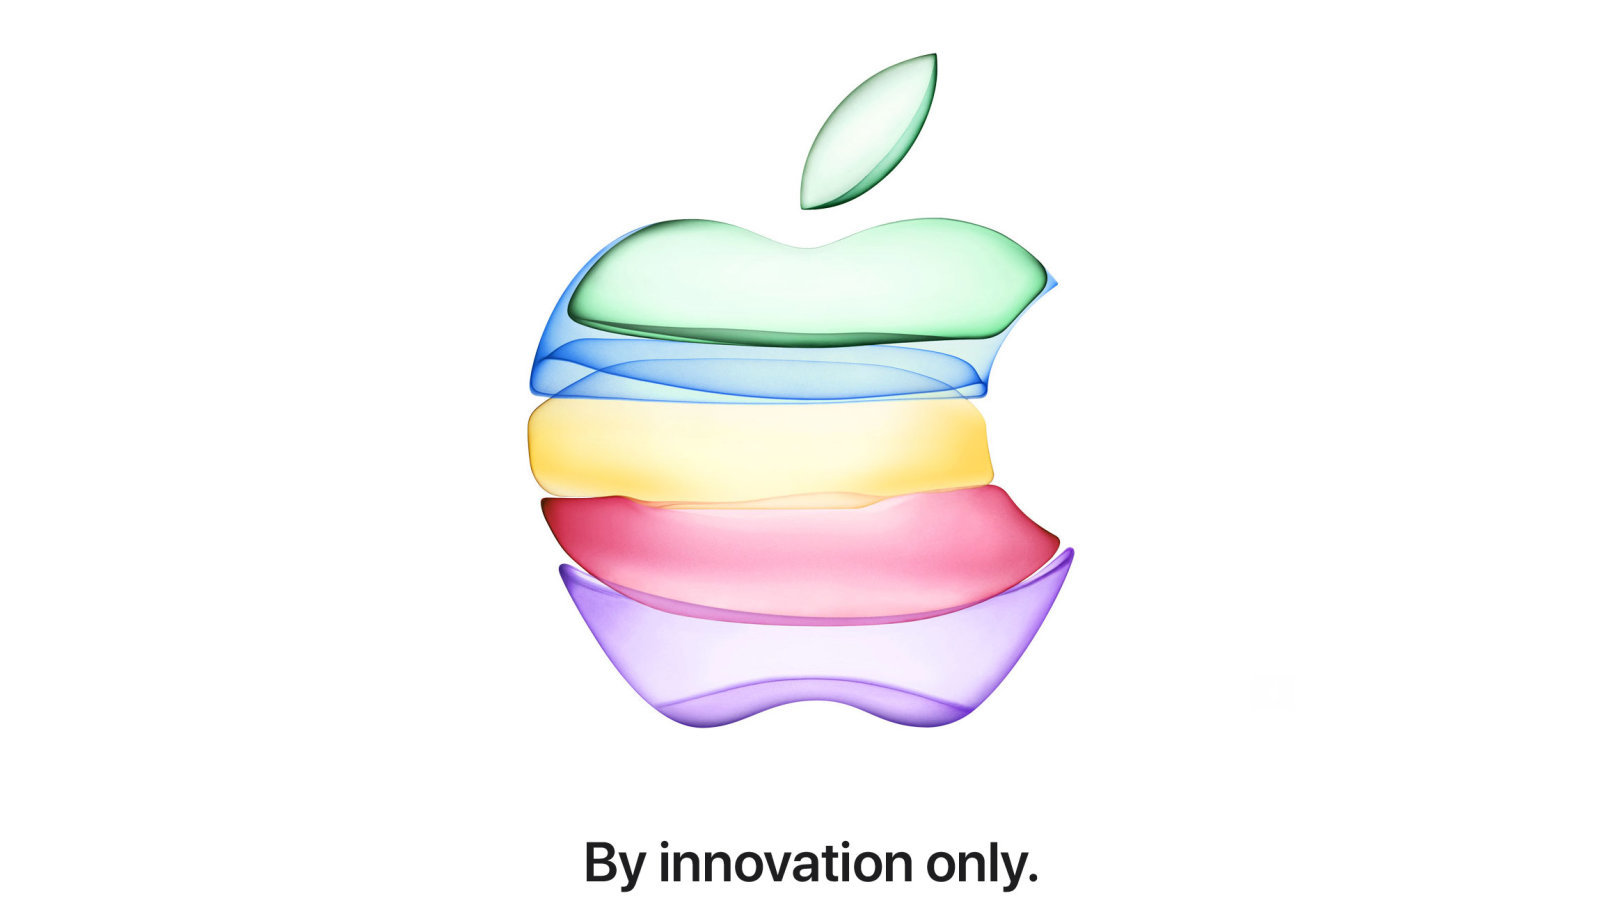 Apple gửi thư mời, chính thức xác nhận sự kiện đặc biệt ra mắt iPhone 11 sẽ diễn ra vào ngày 10/9